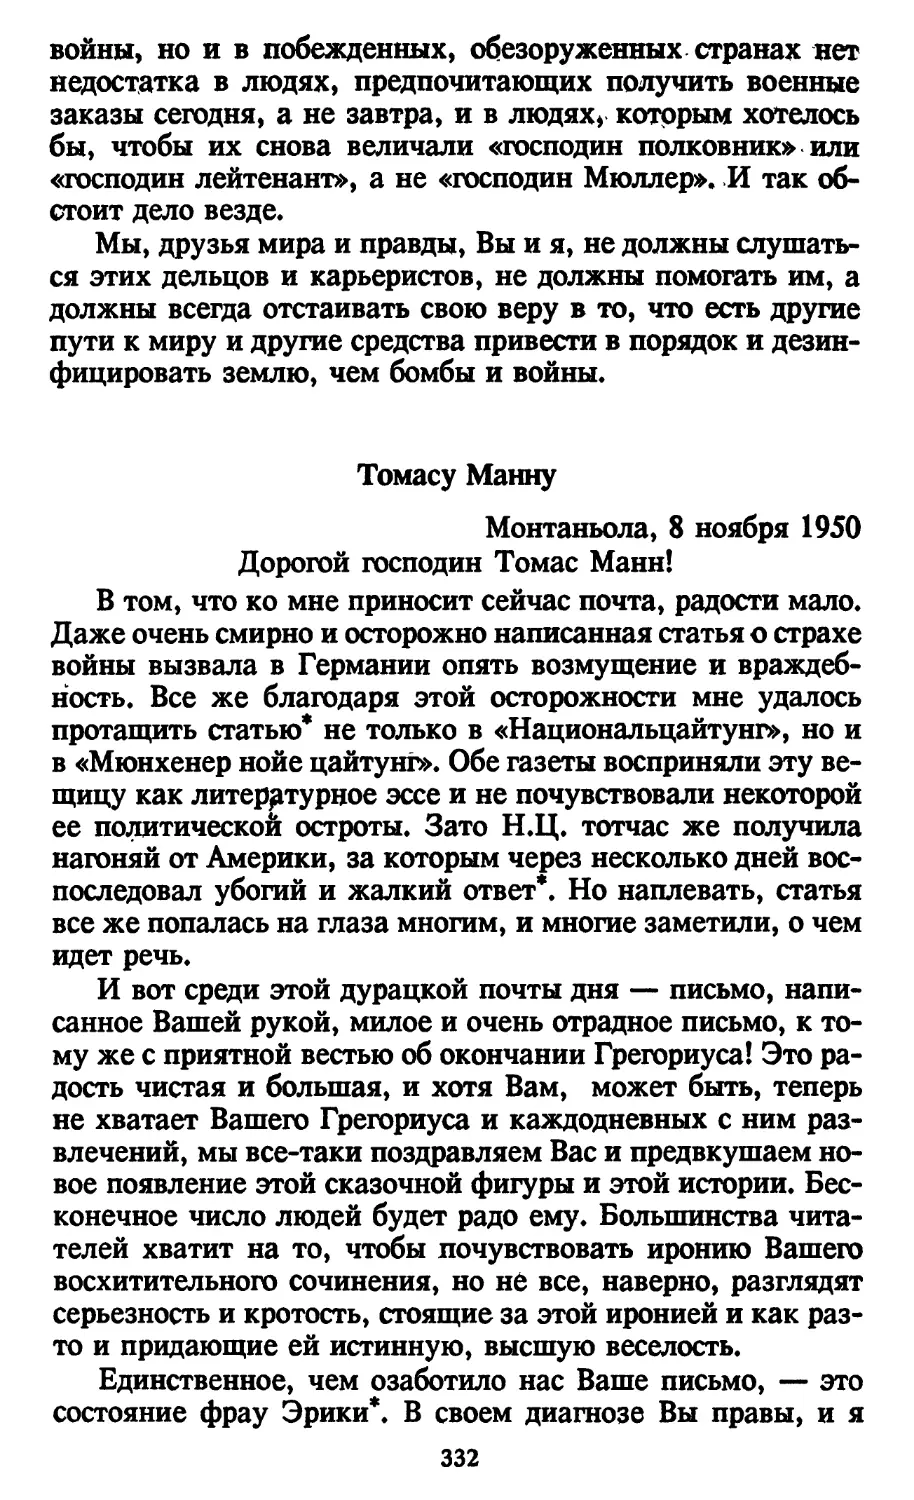 Томасу Манну. 8 ноября 1950